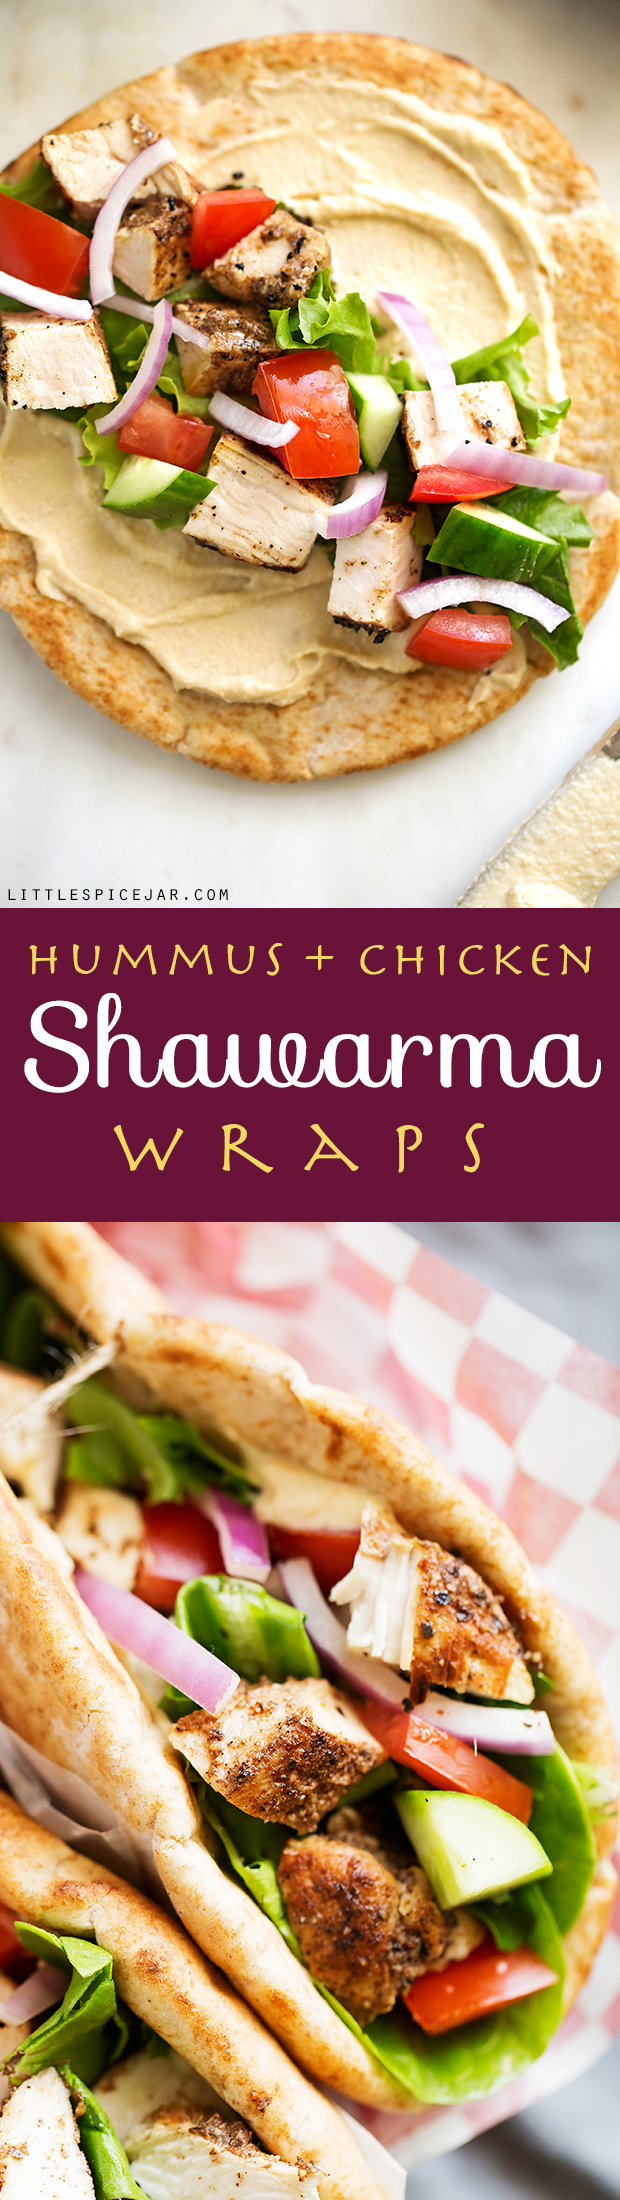 Hummus Chicken Shawarma Wraps Recipe | Little Spice Jar